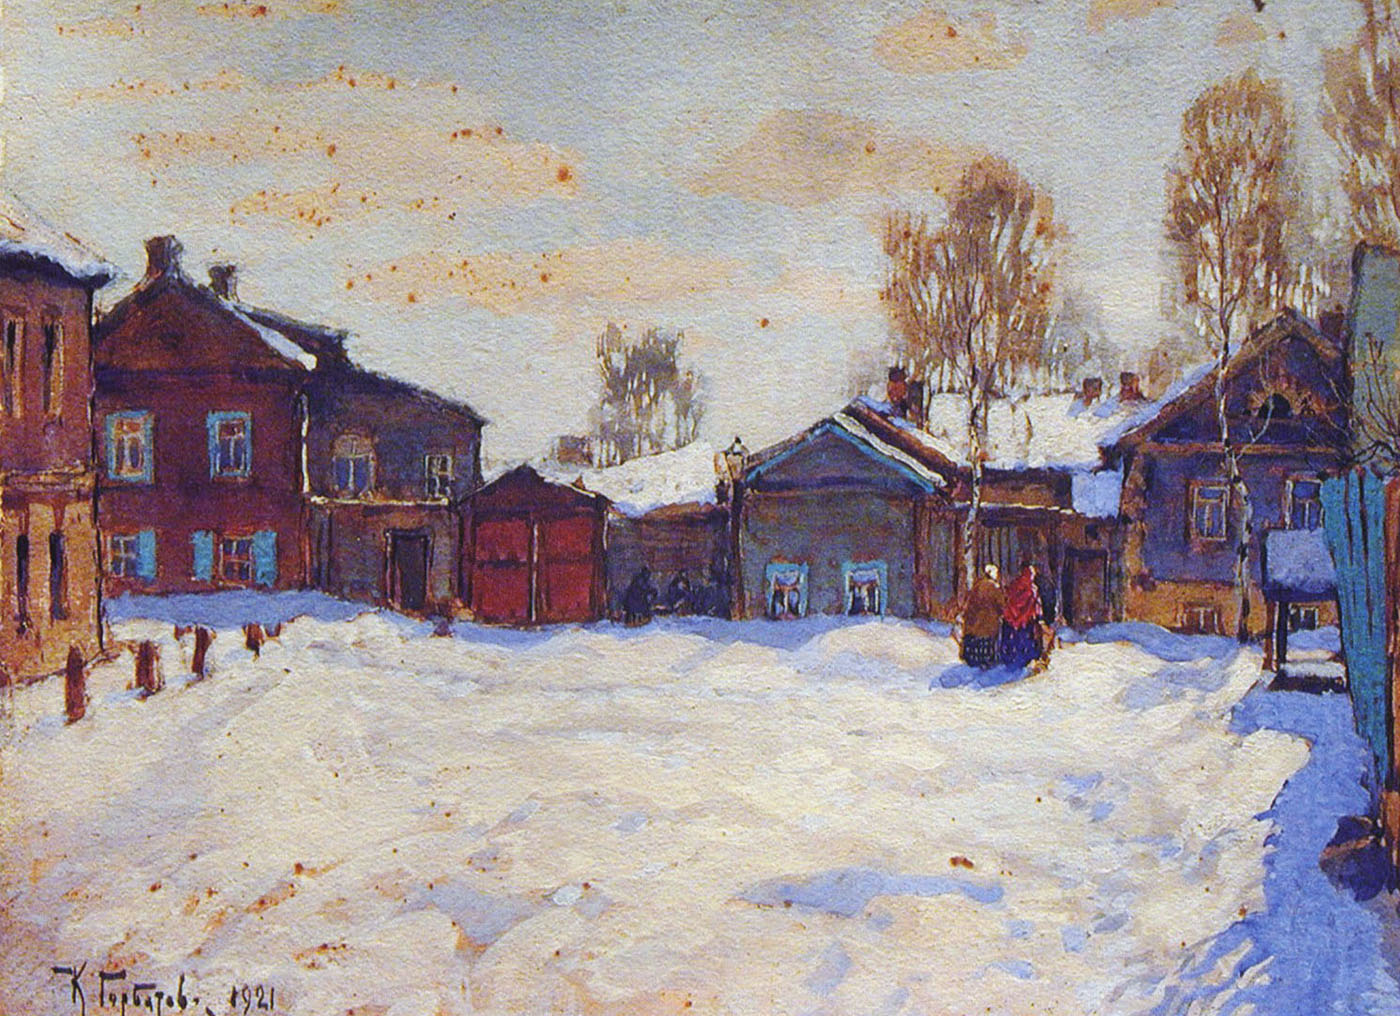 Горбатов. Улица зимой. 1921